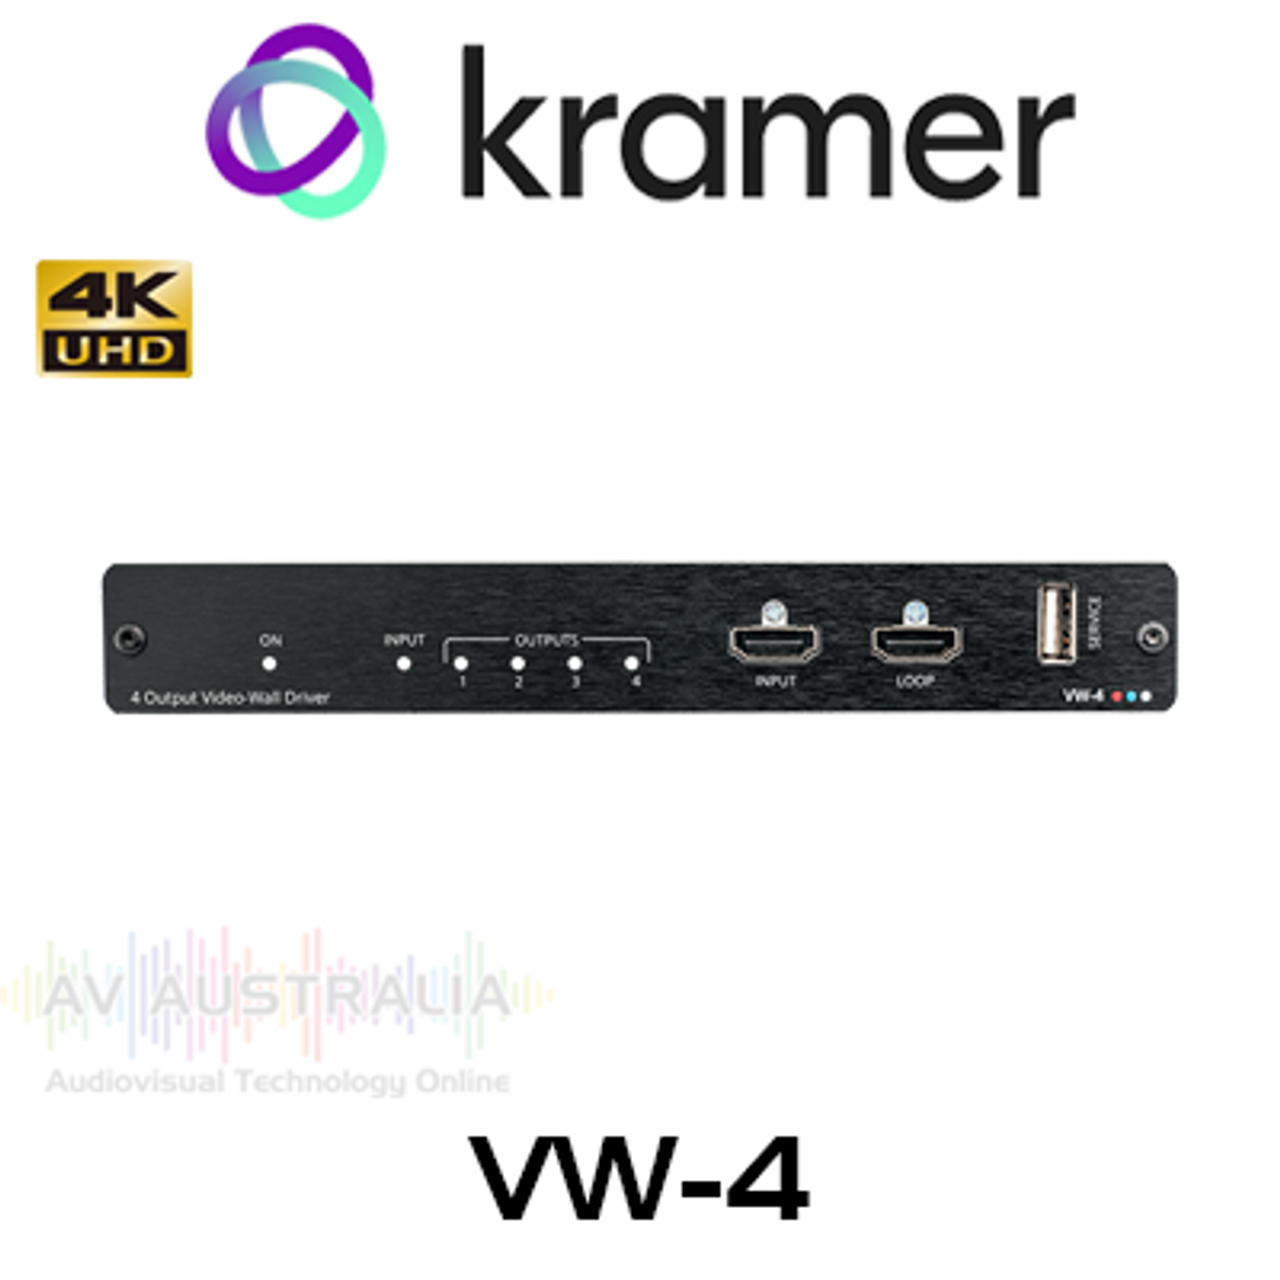 Kramer VW-4 1x4 HDMI Video Wall Processor